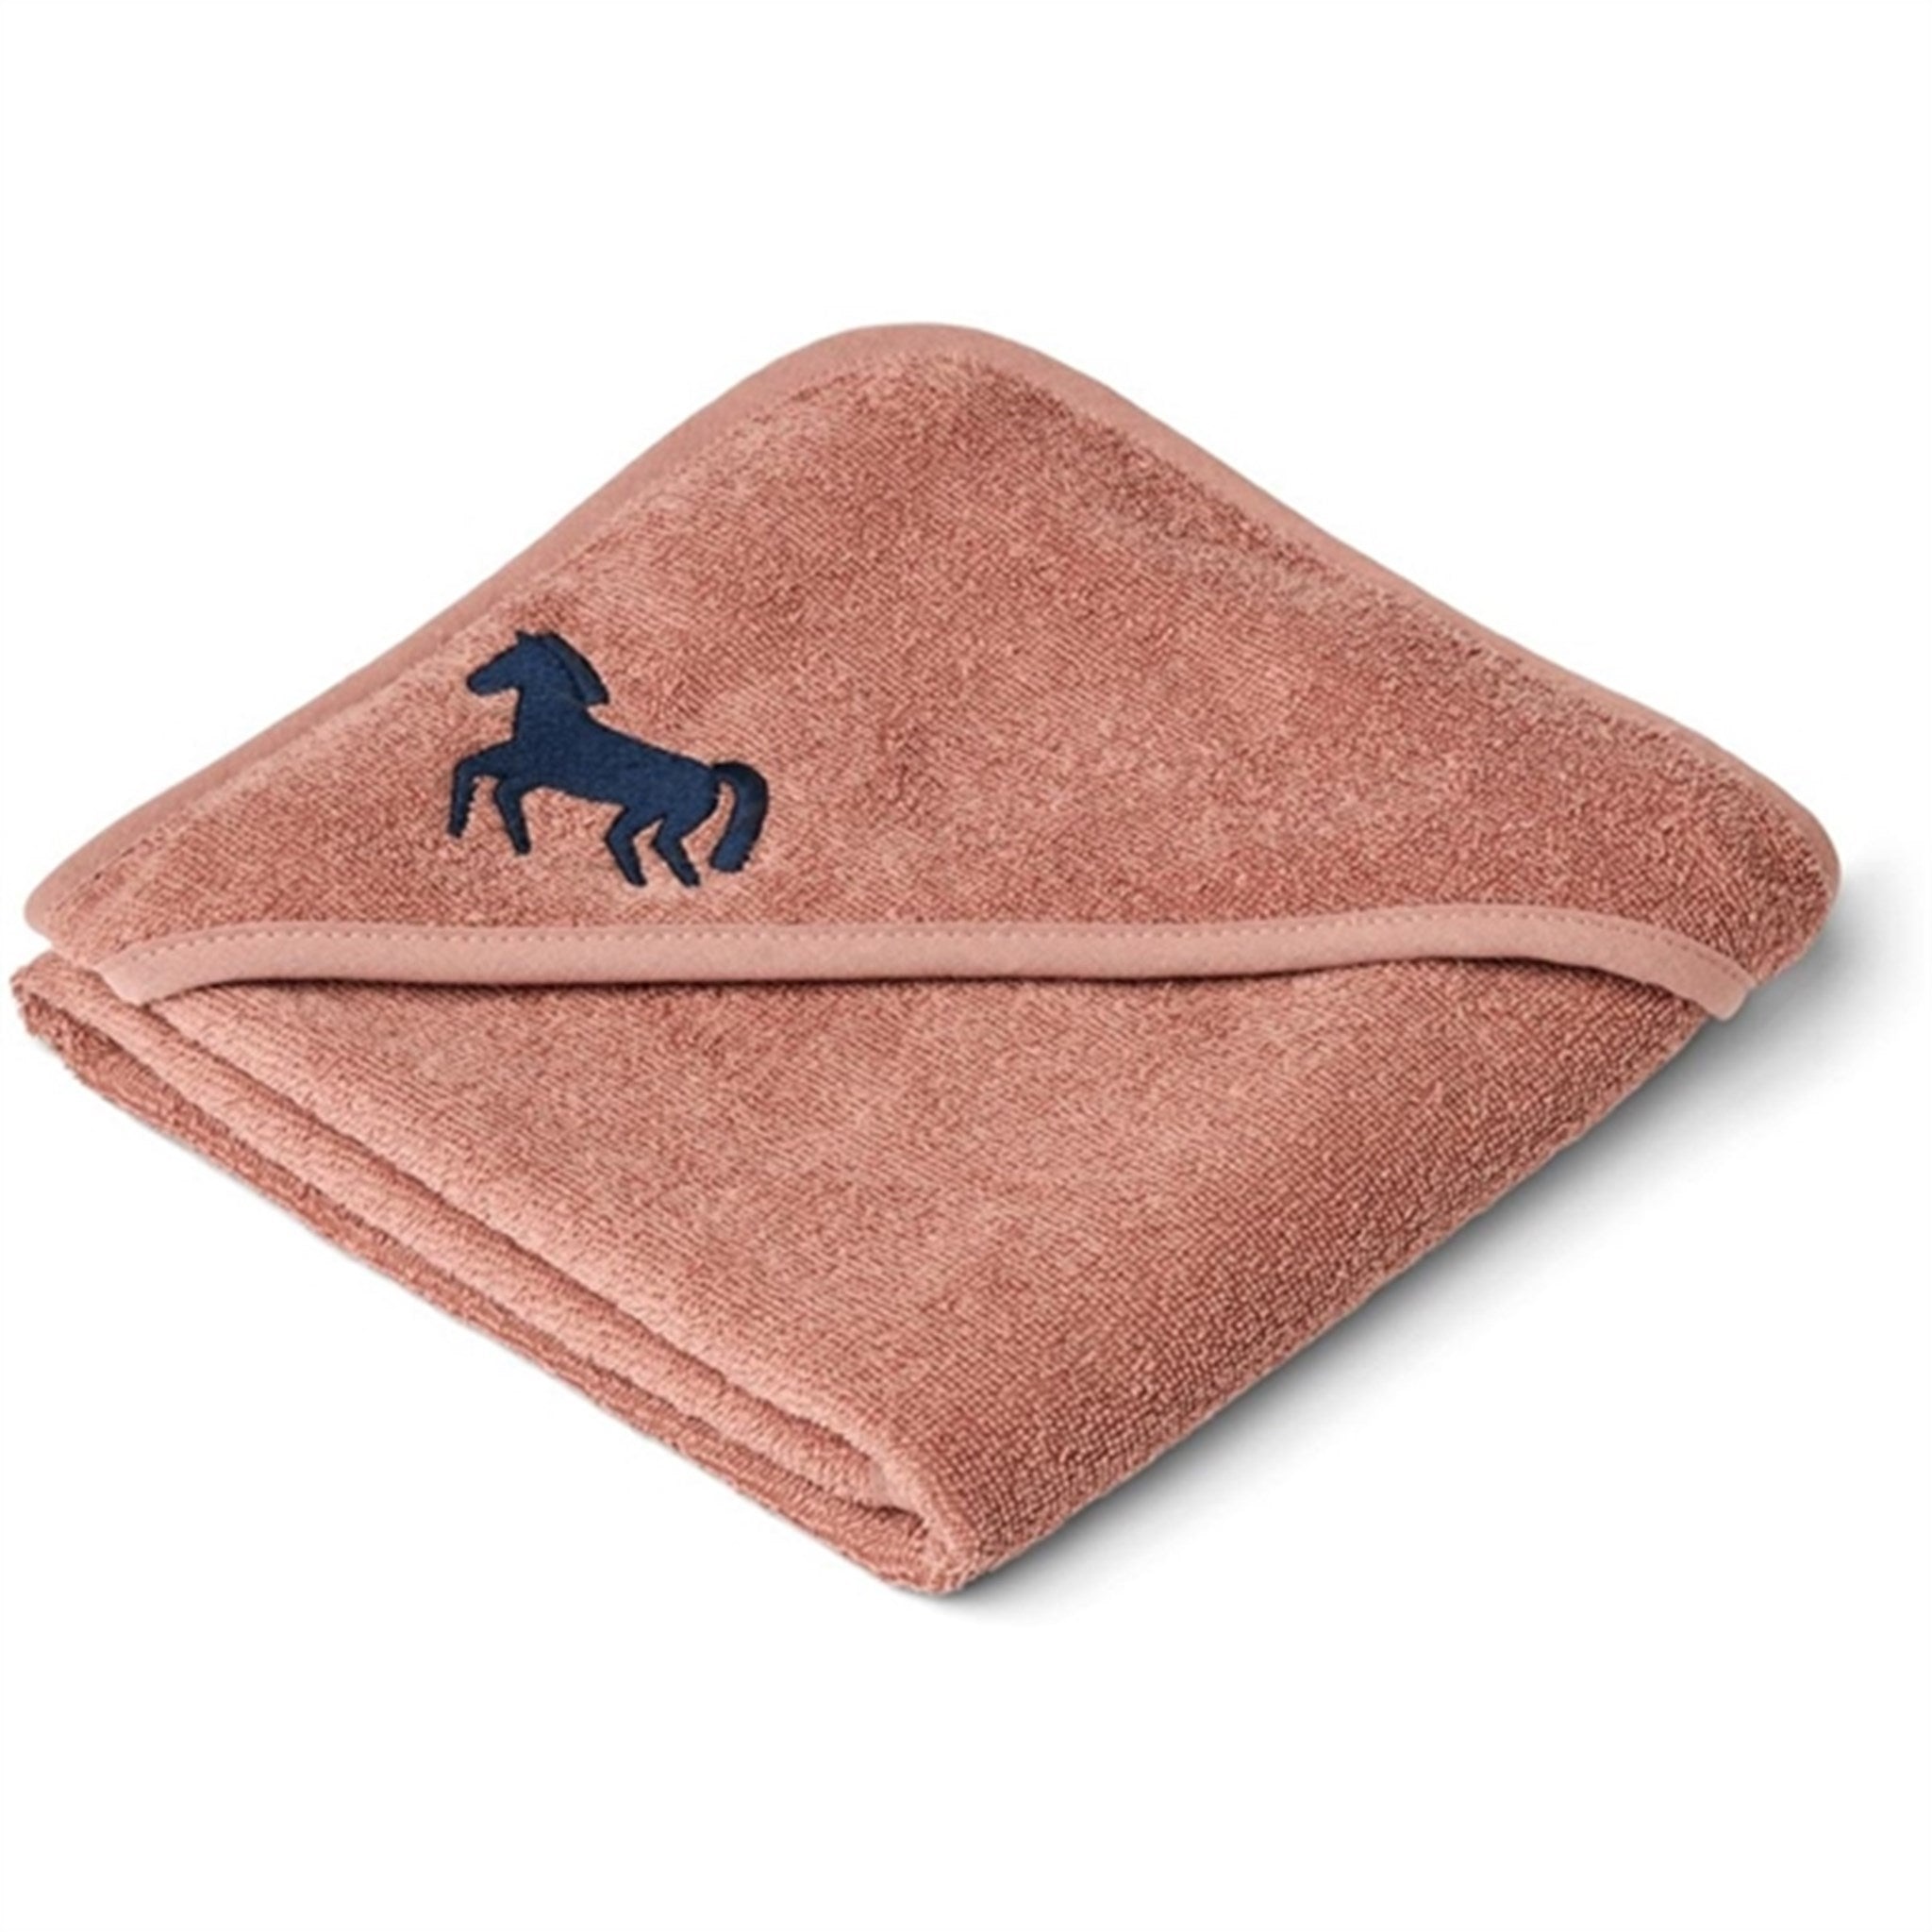 Liewood Batu Baby Hooded Towel Horses/Dark Rosetta